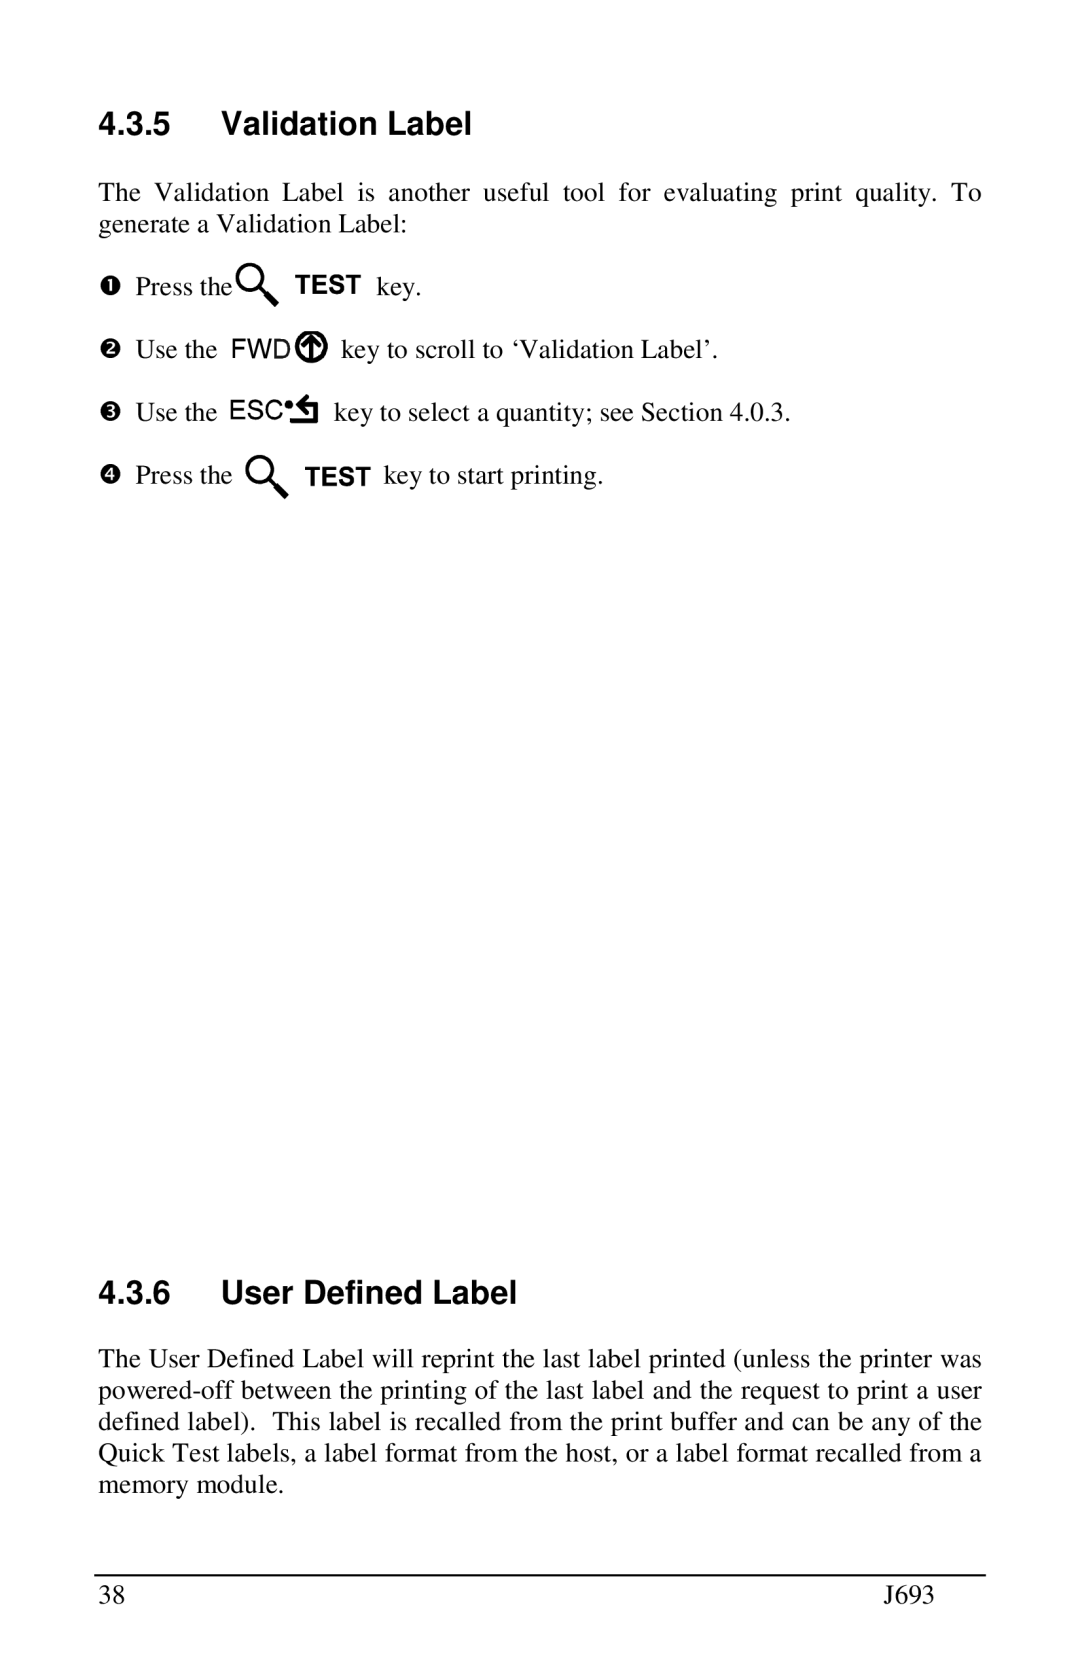 Pitney Bowes J693 manual Validation Label, User Defined Label 